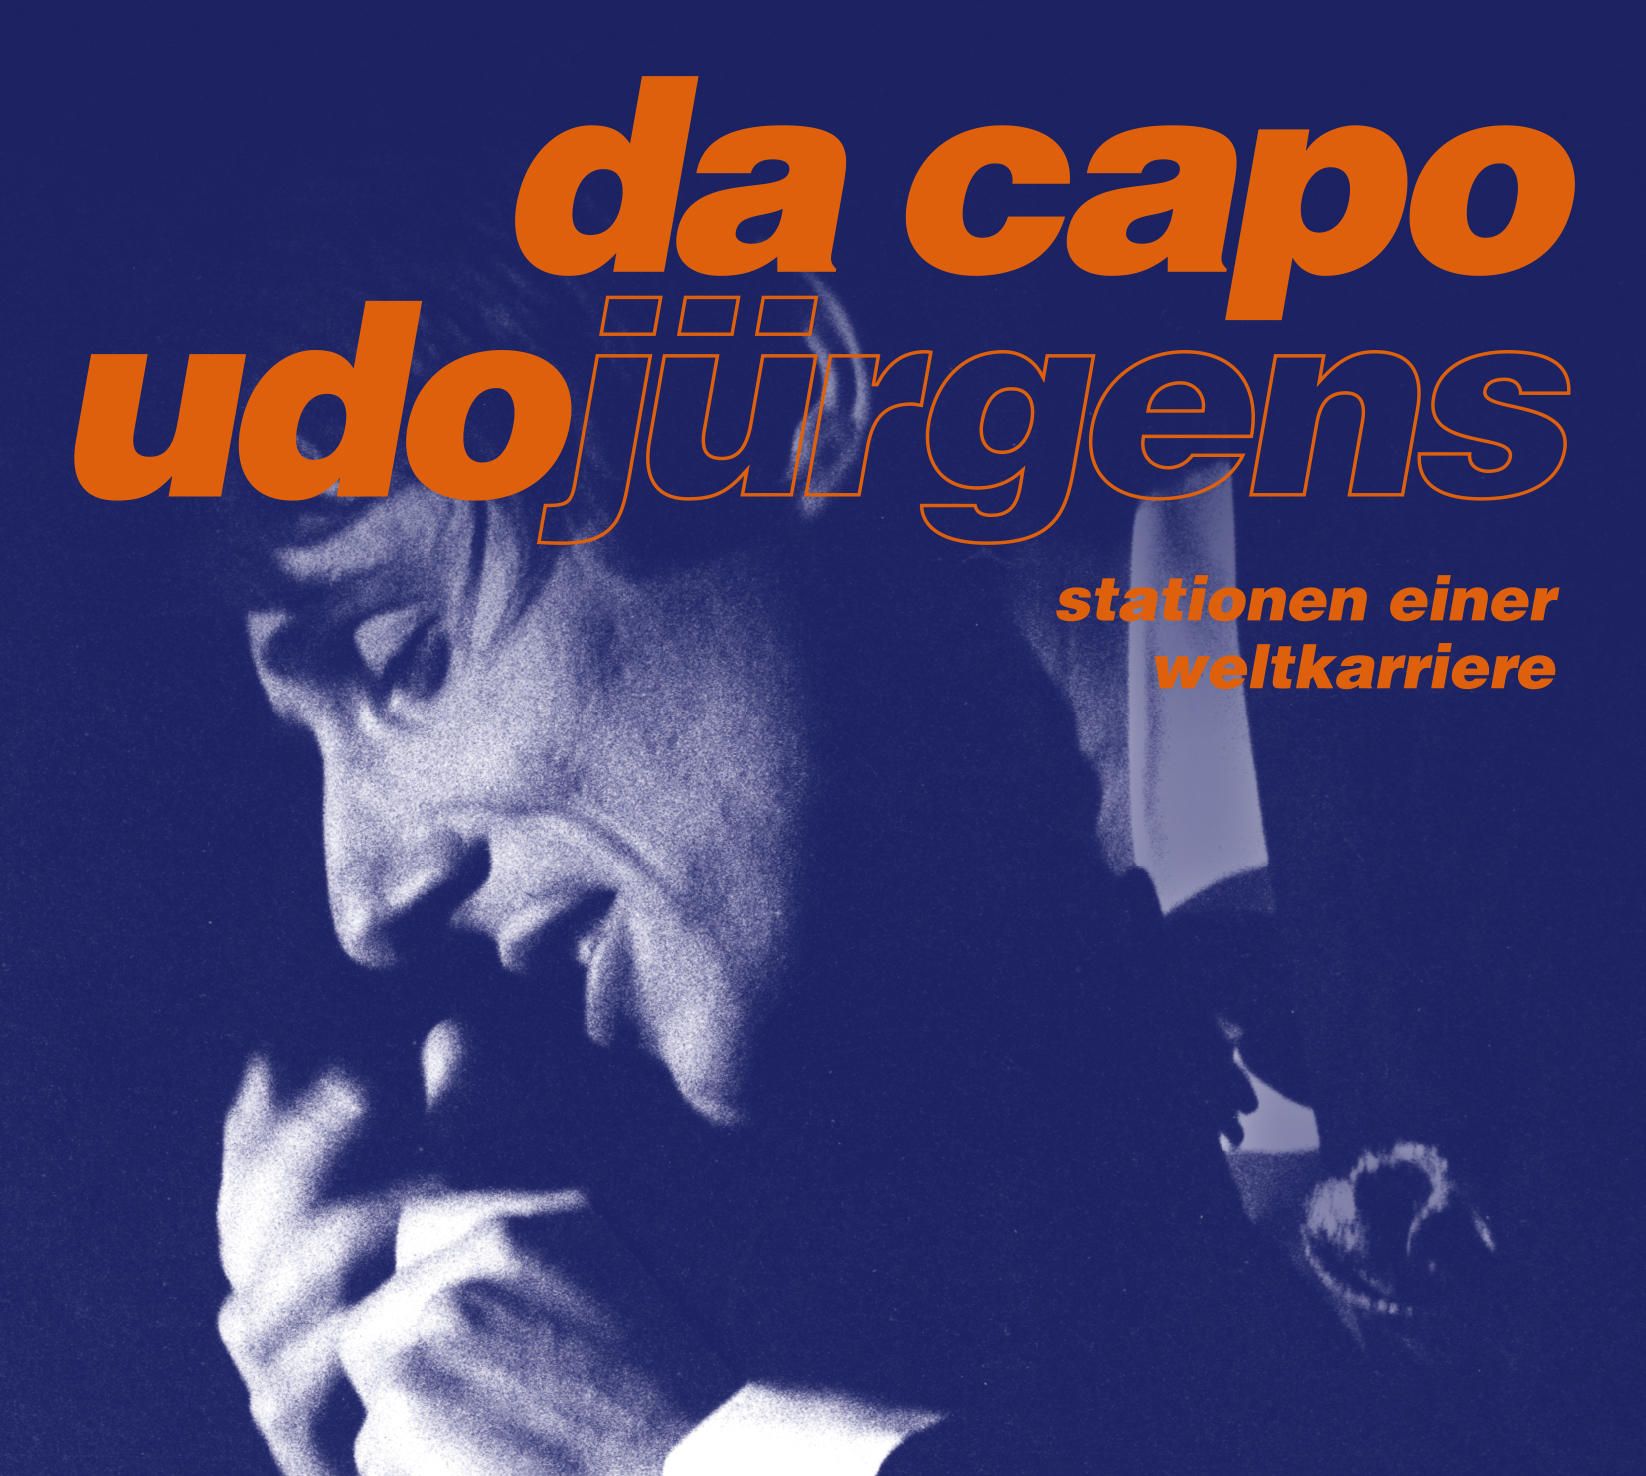 Udo Jürgens - Da Einer (CD) - Weltkarriere - Capo Stationen